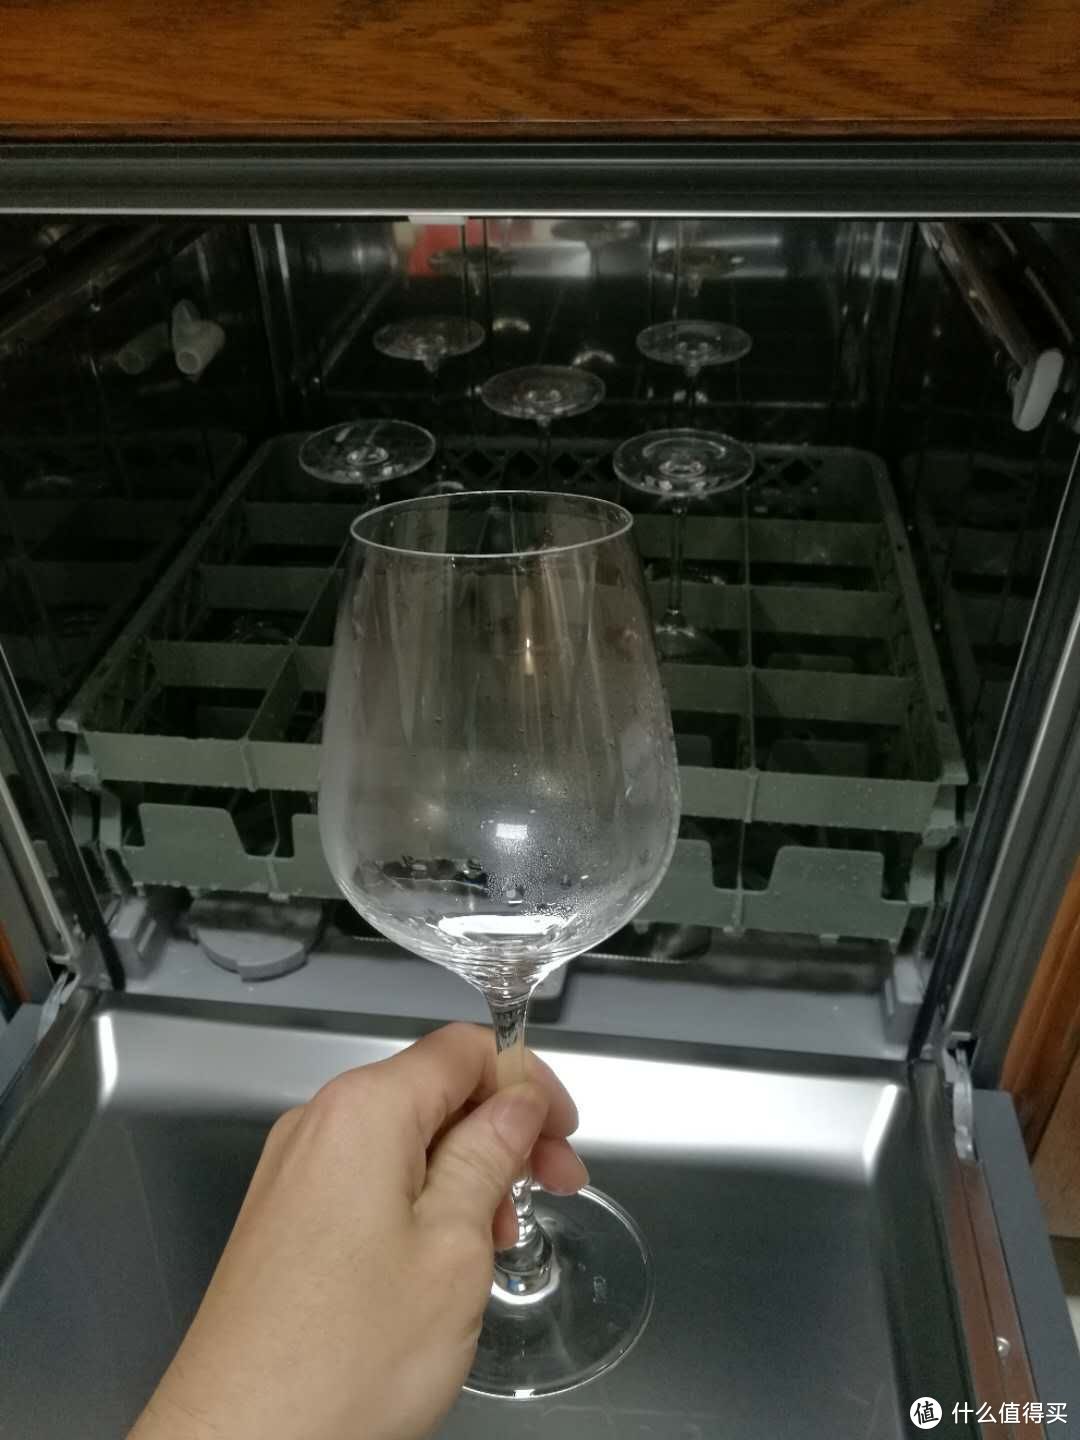 酒杯架-打开洗碗机新技能点